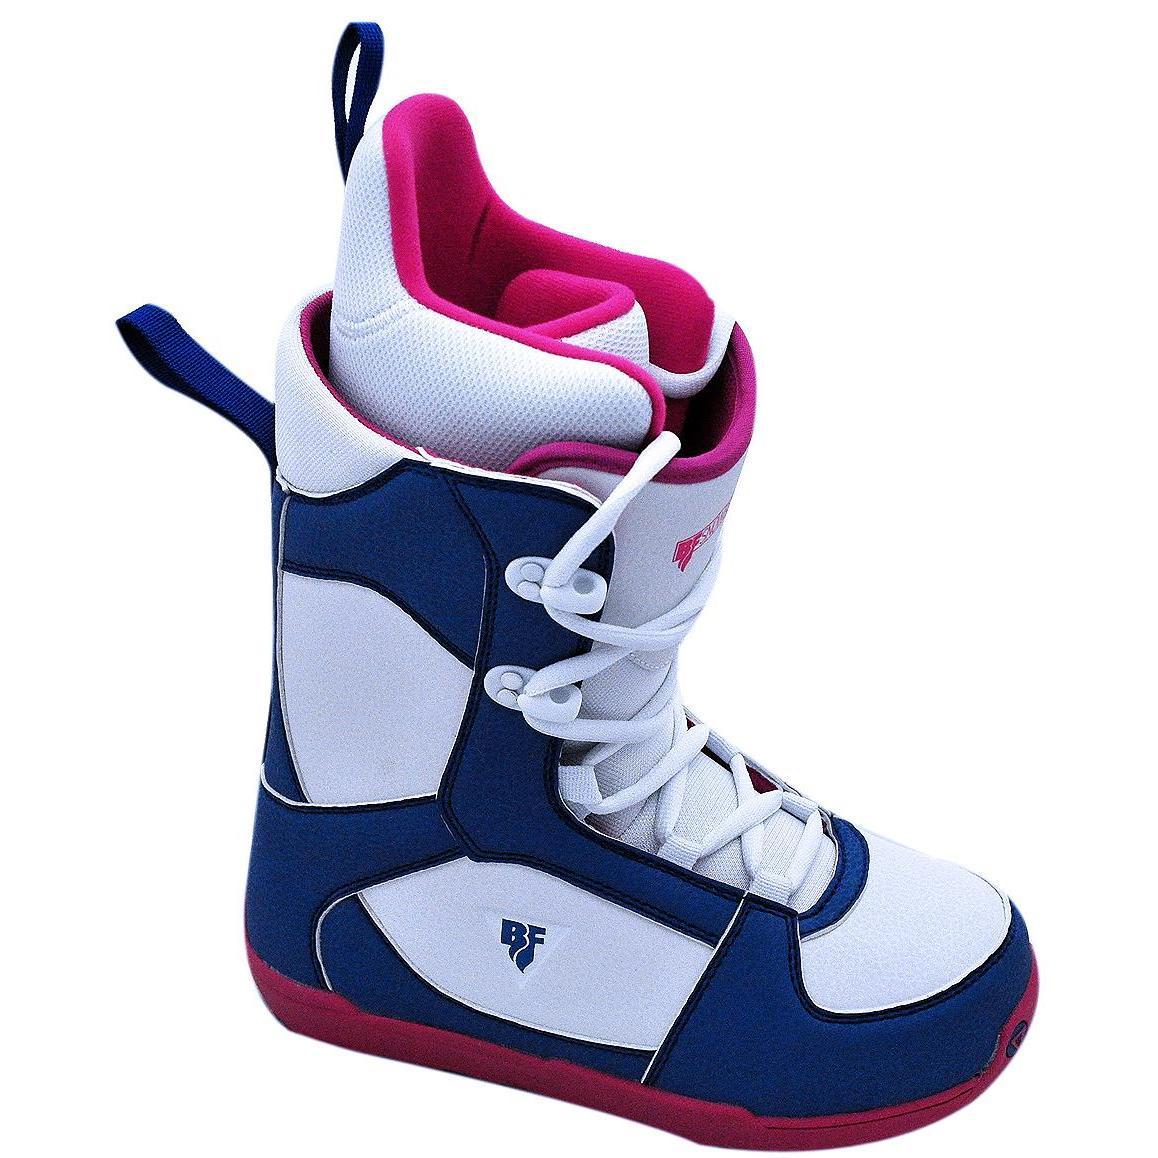 Ботинки для сноуборда BF snowboards 2018-19 Young Lady